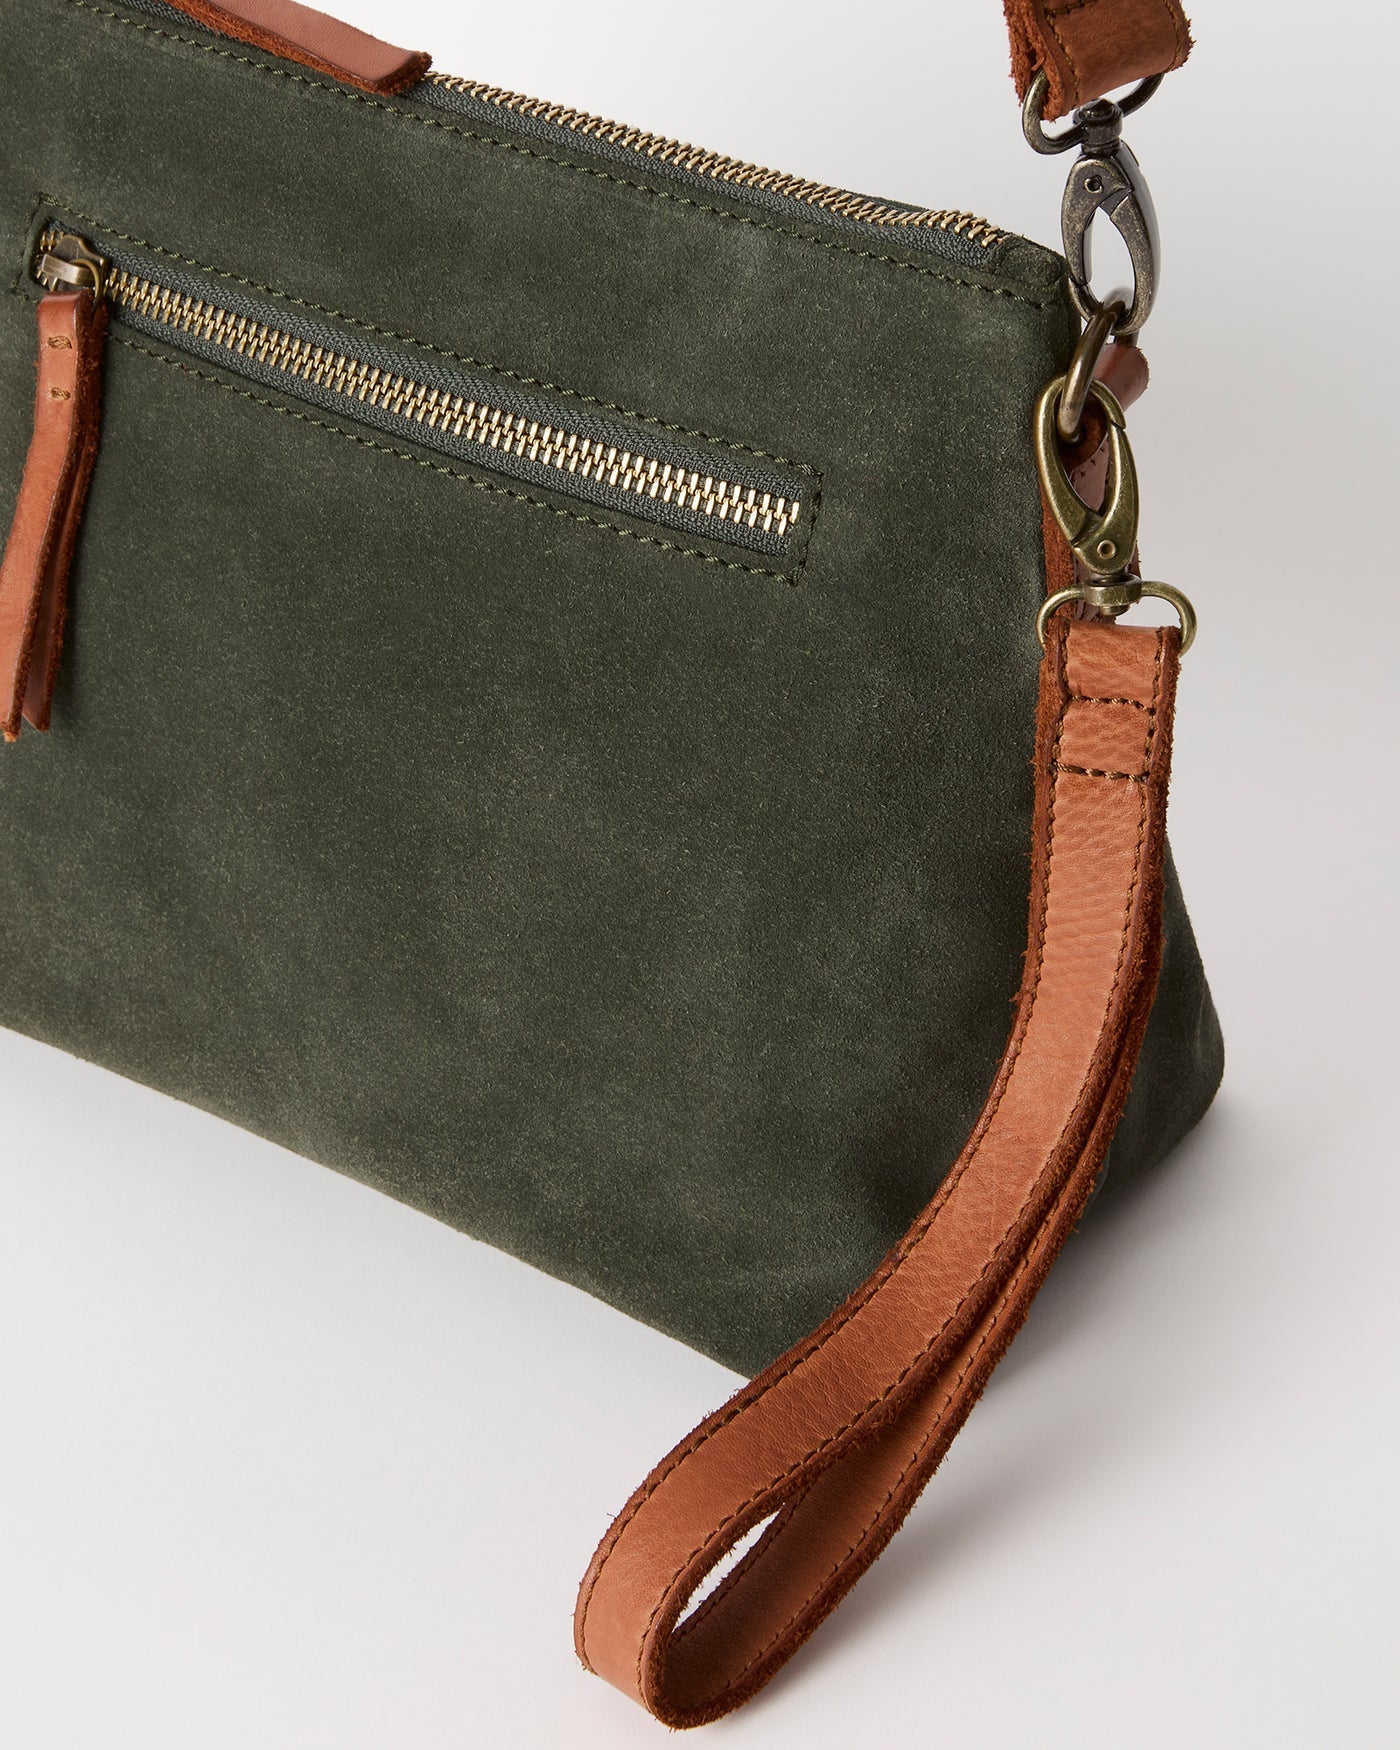 Juju Suede Essential handbag - 2 colours